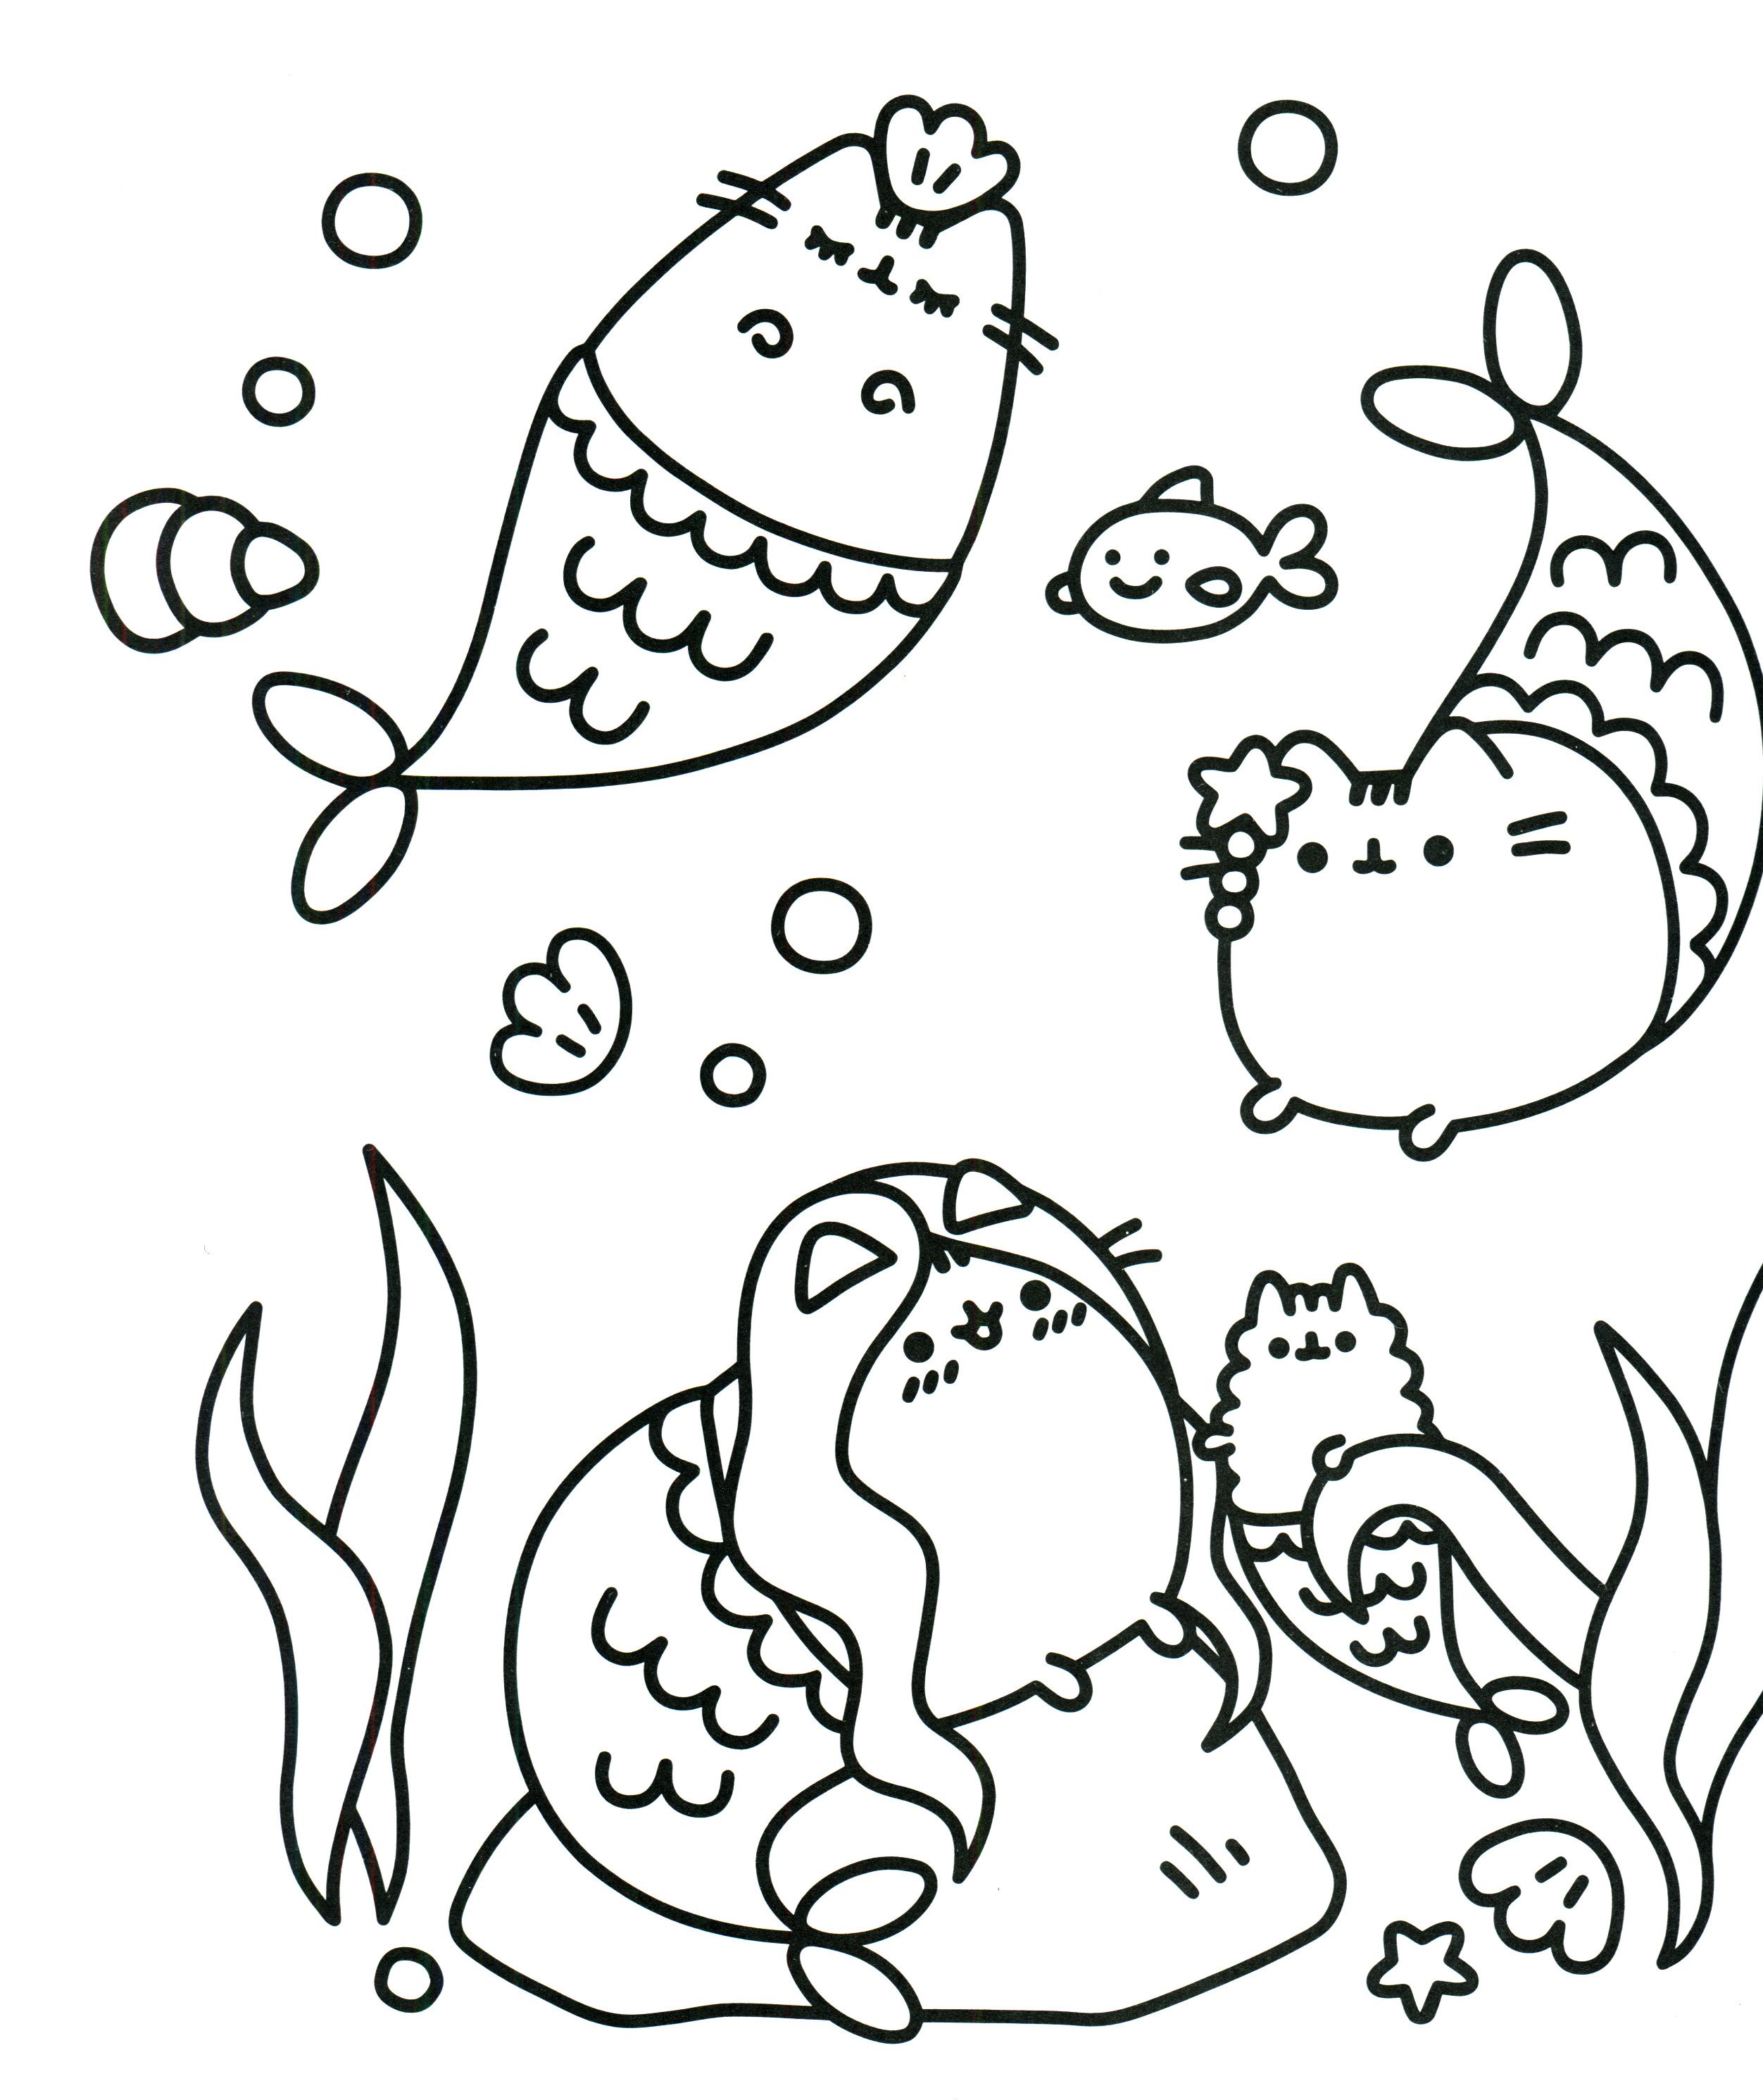 Free Printable Pusheen Coloring Pages
 Pusheen Coloring Book Pusheen Pusheen the Cat